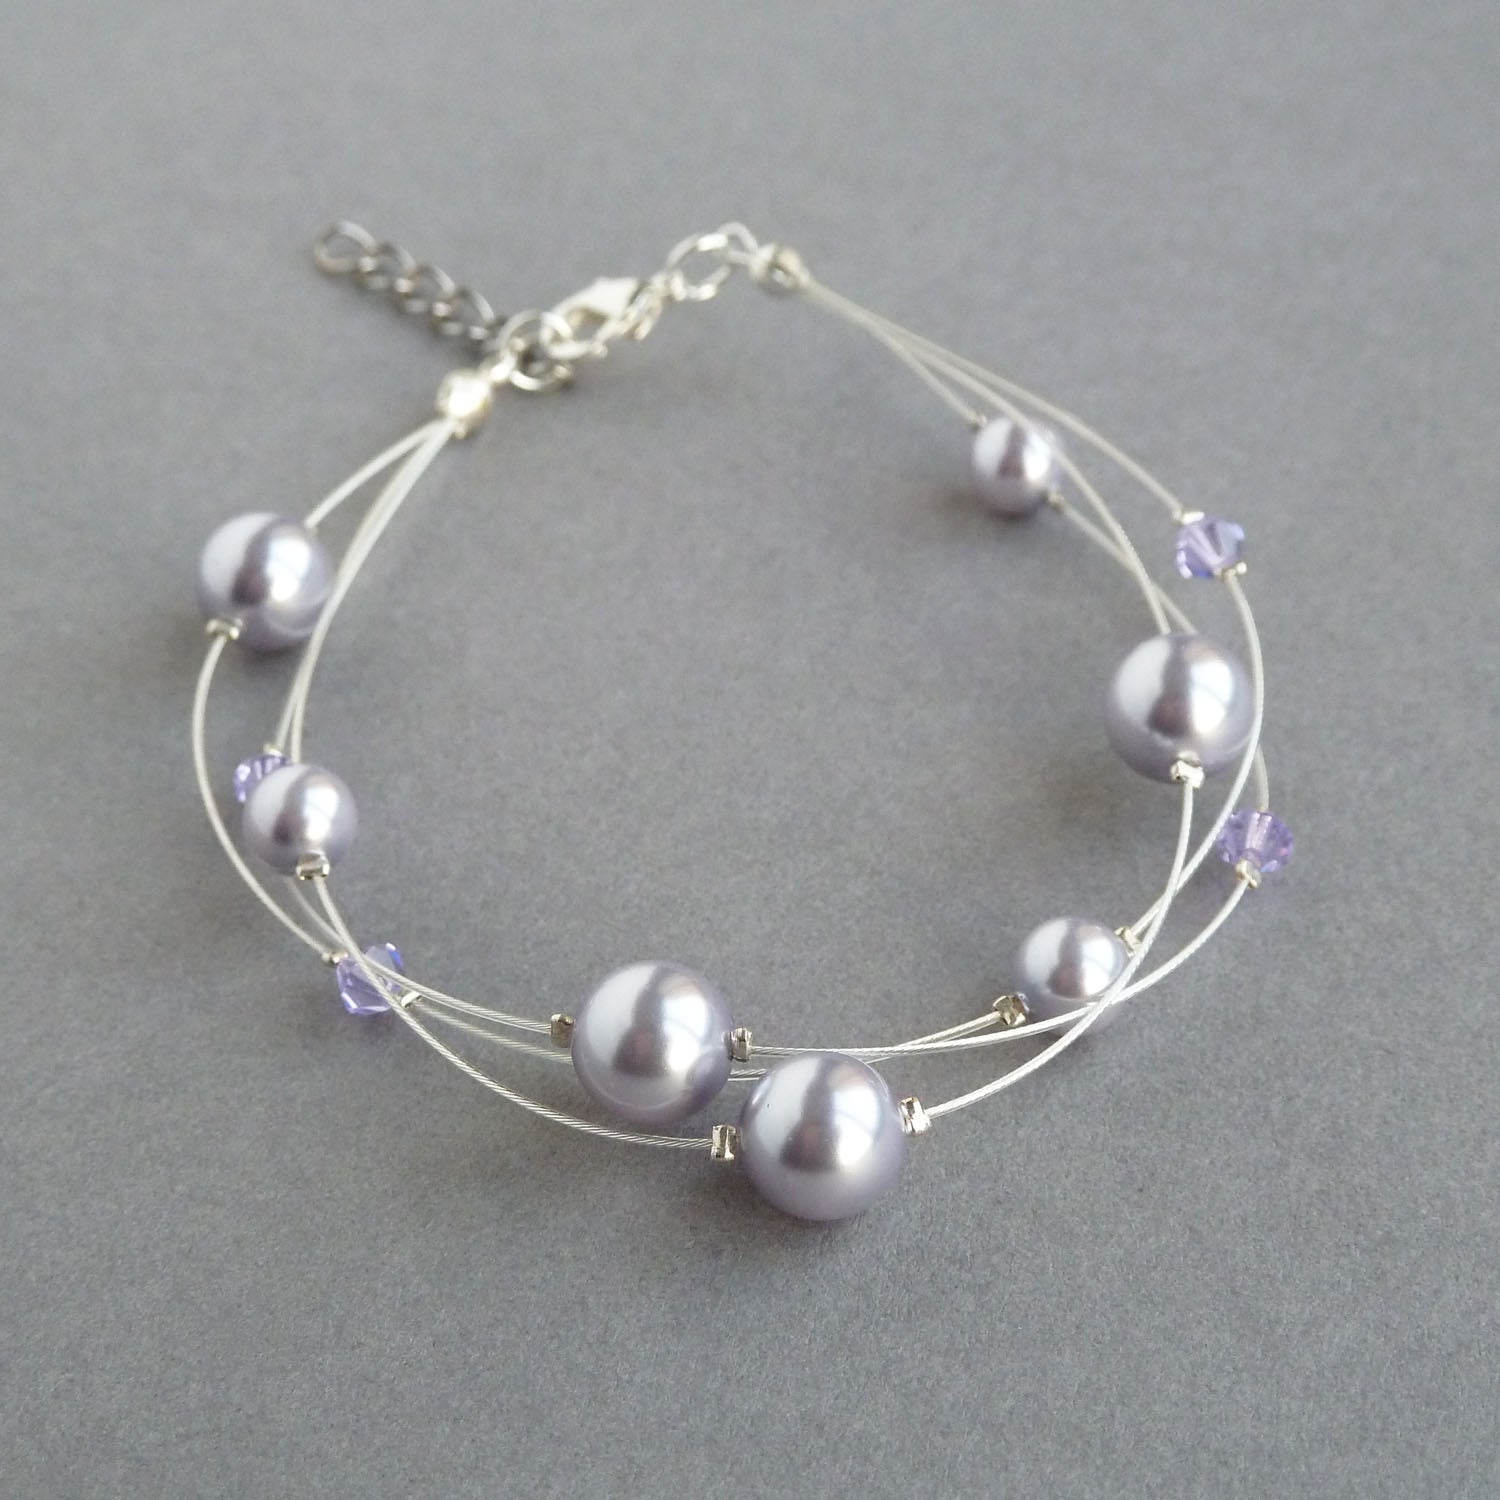 Lavender floating pearl bracelet